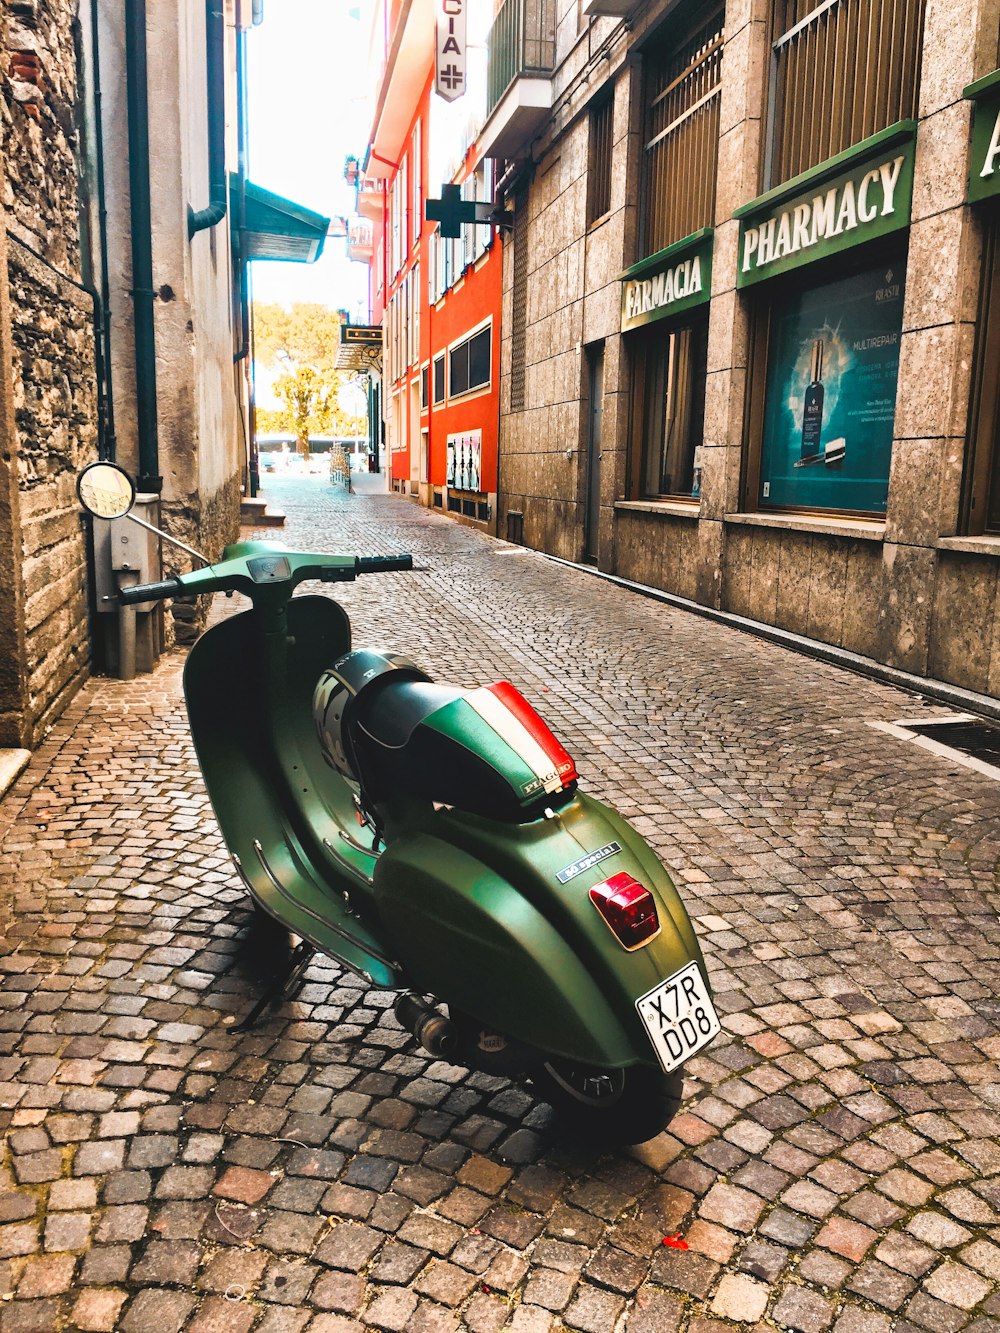 scooter verde estacionado al lado del edificio